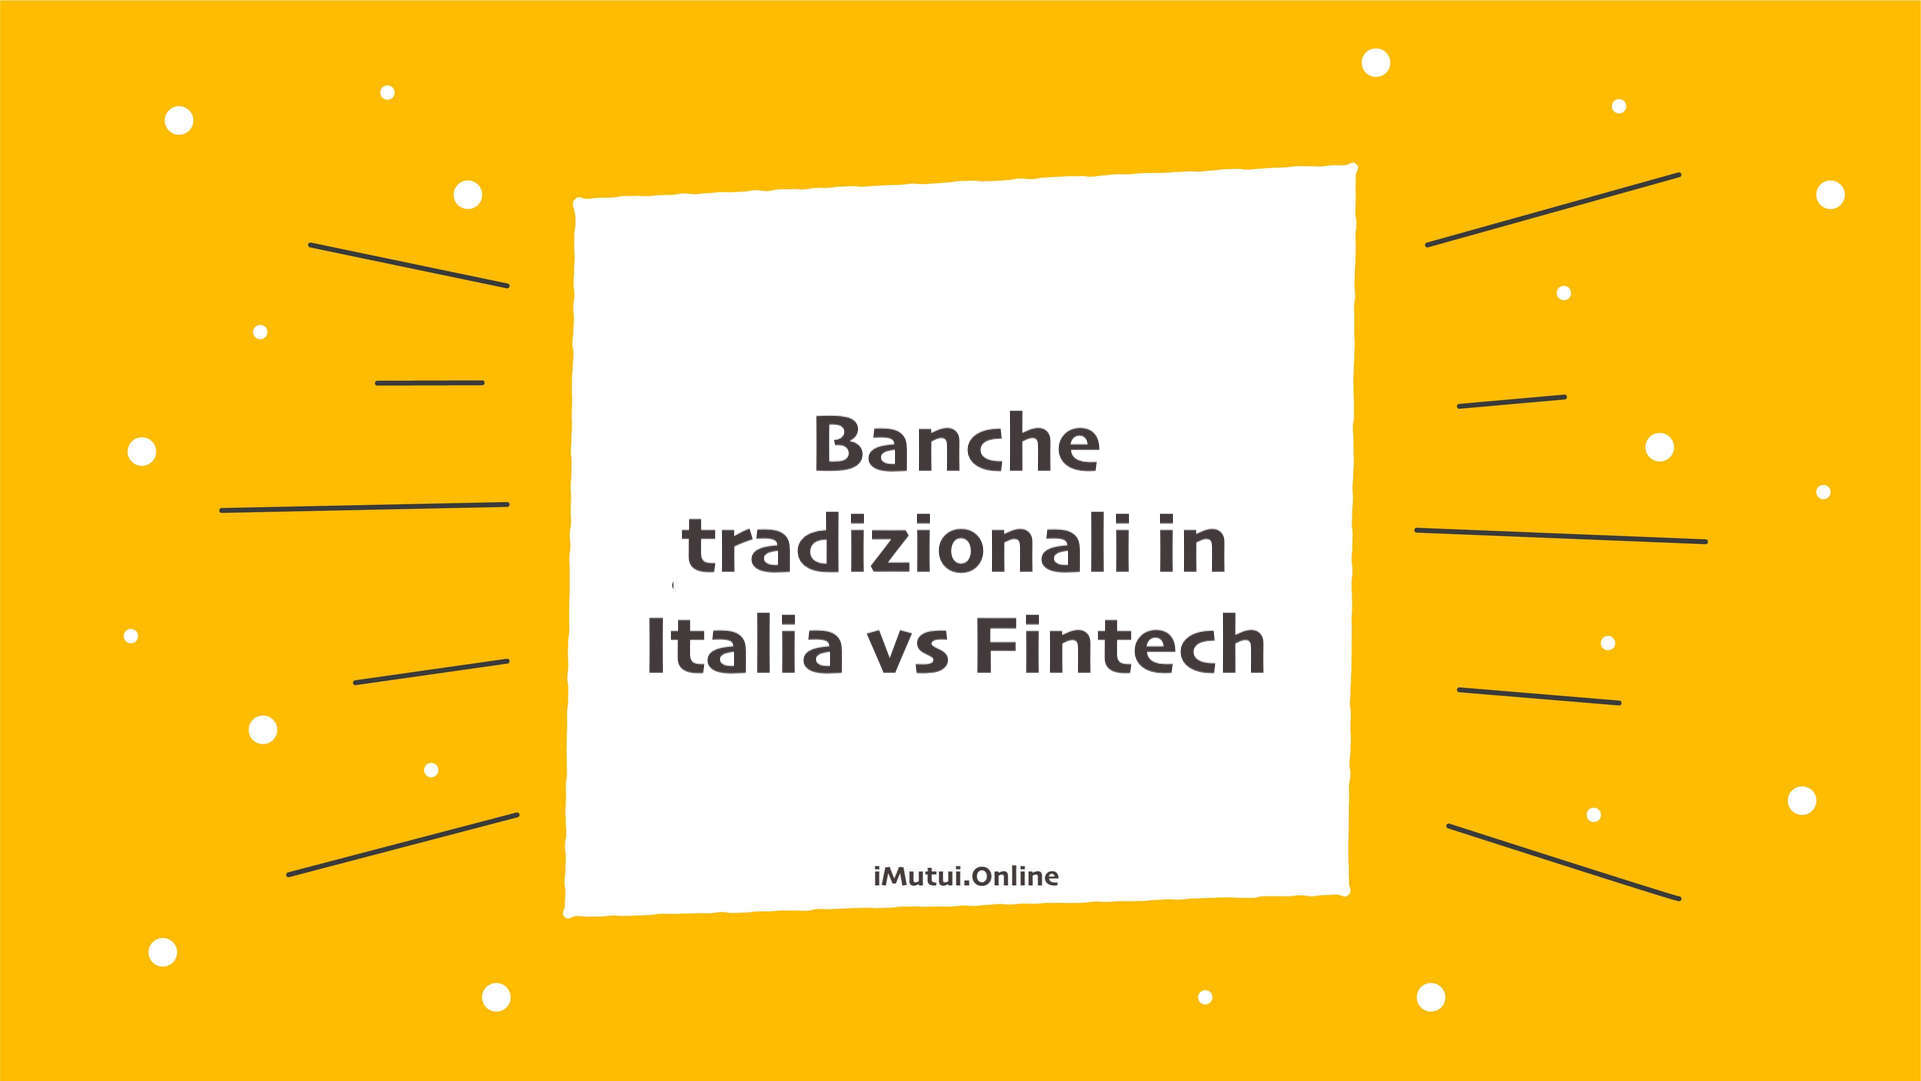 Banche tradizionali in Italia vs Fintech